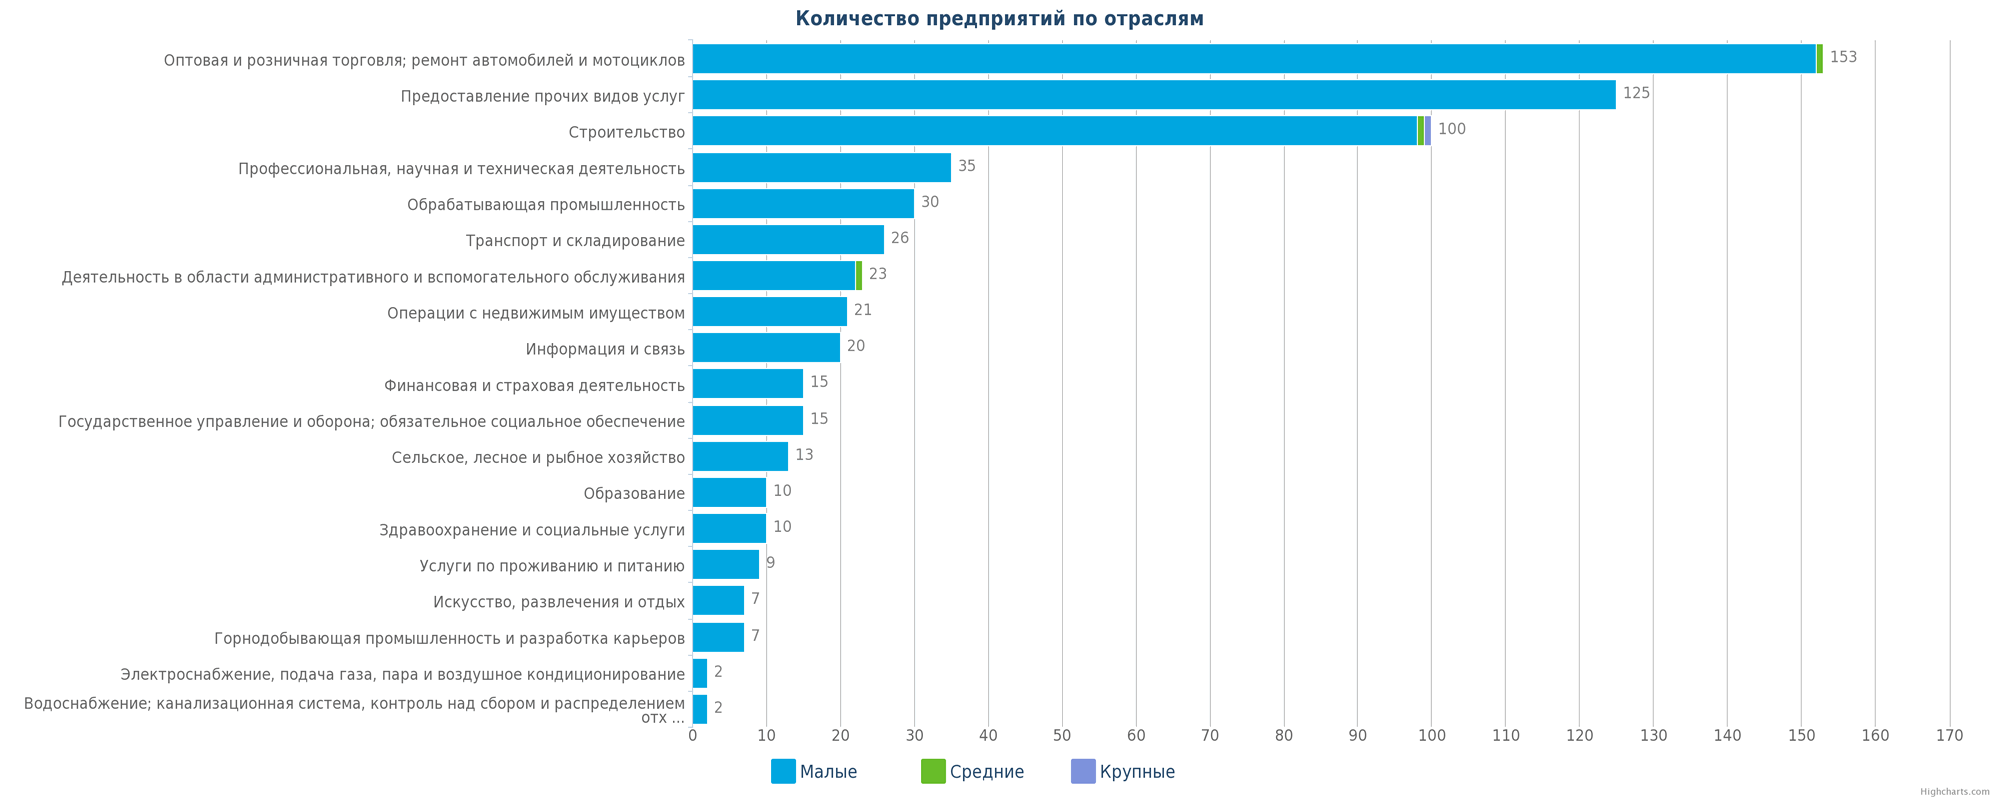 Новые юридические лица Казахстана по отраслям деятельности - малые, средние и крупные компании